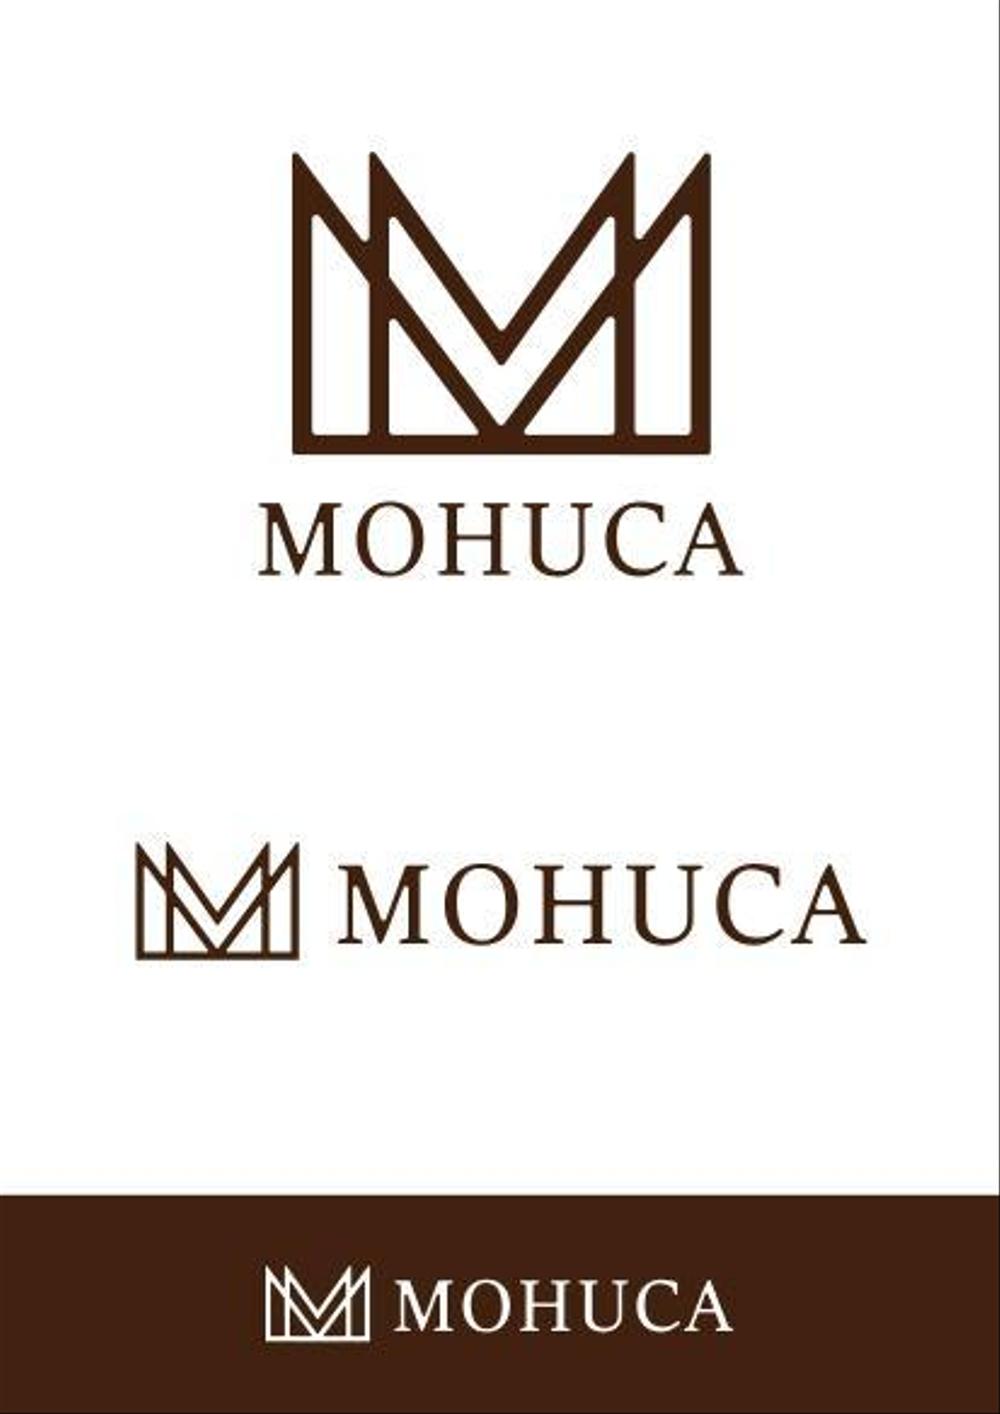 MOHUCA2.jpg